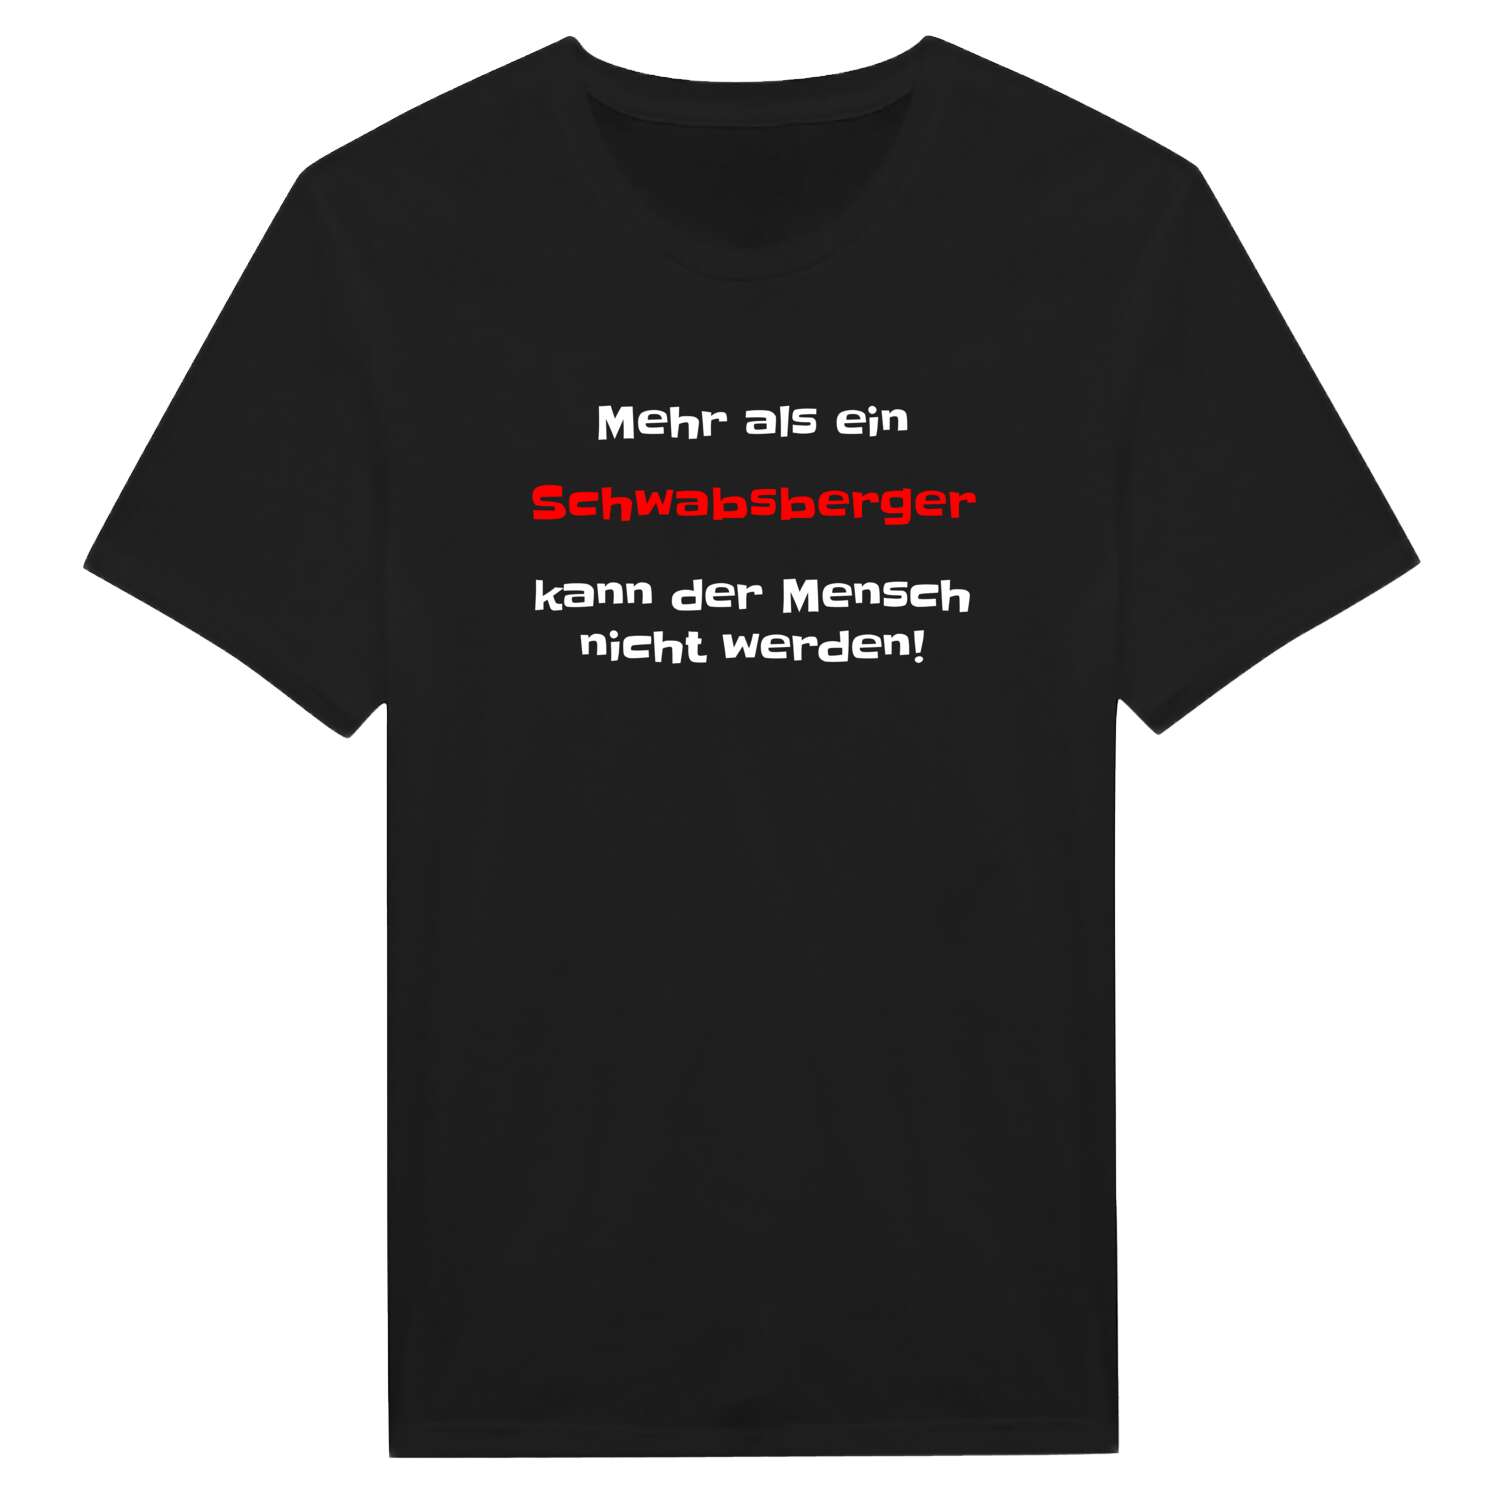 Schwabsberg T-Shirt »Mehr als ein«